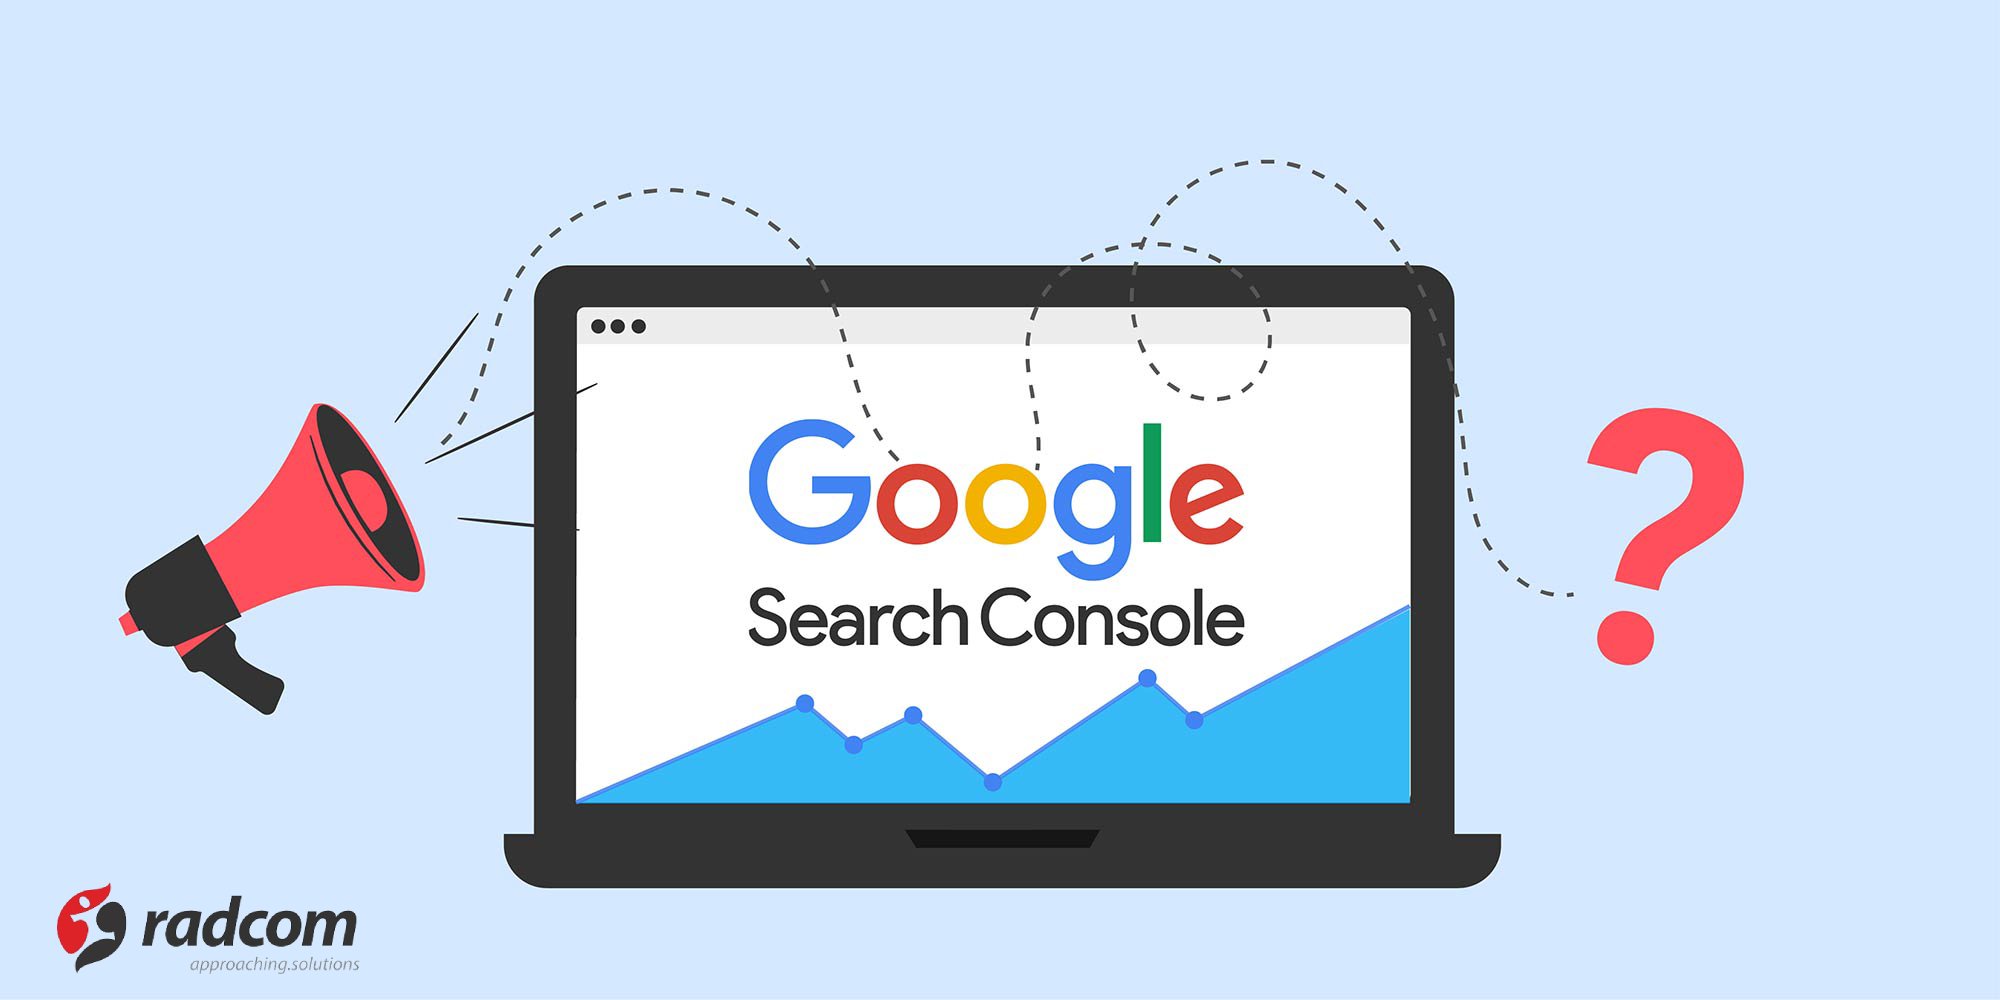 نگاهی مختصر به ابزار گوگل سرچ کنسول (Google Search Console)